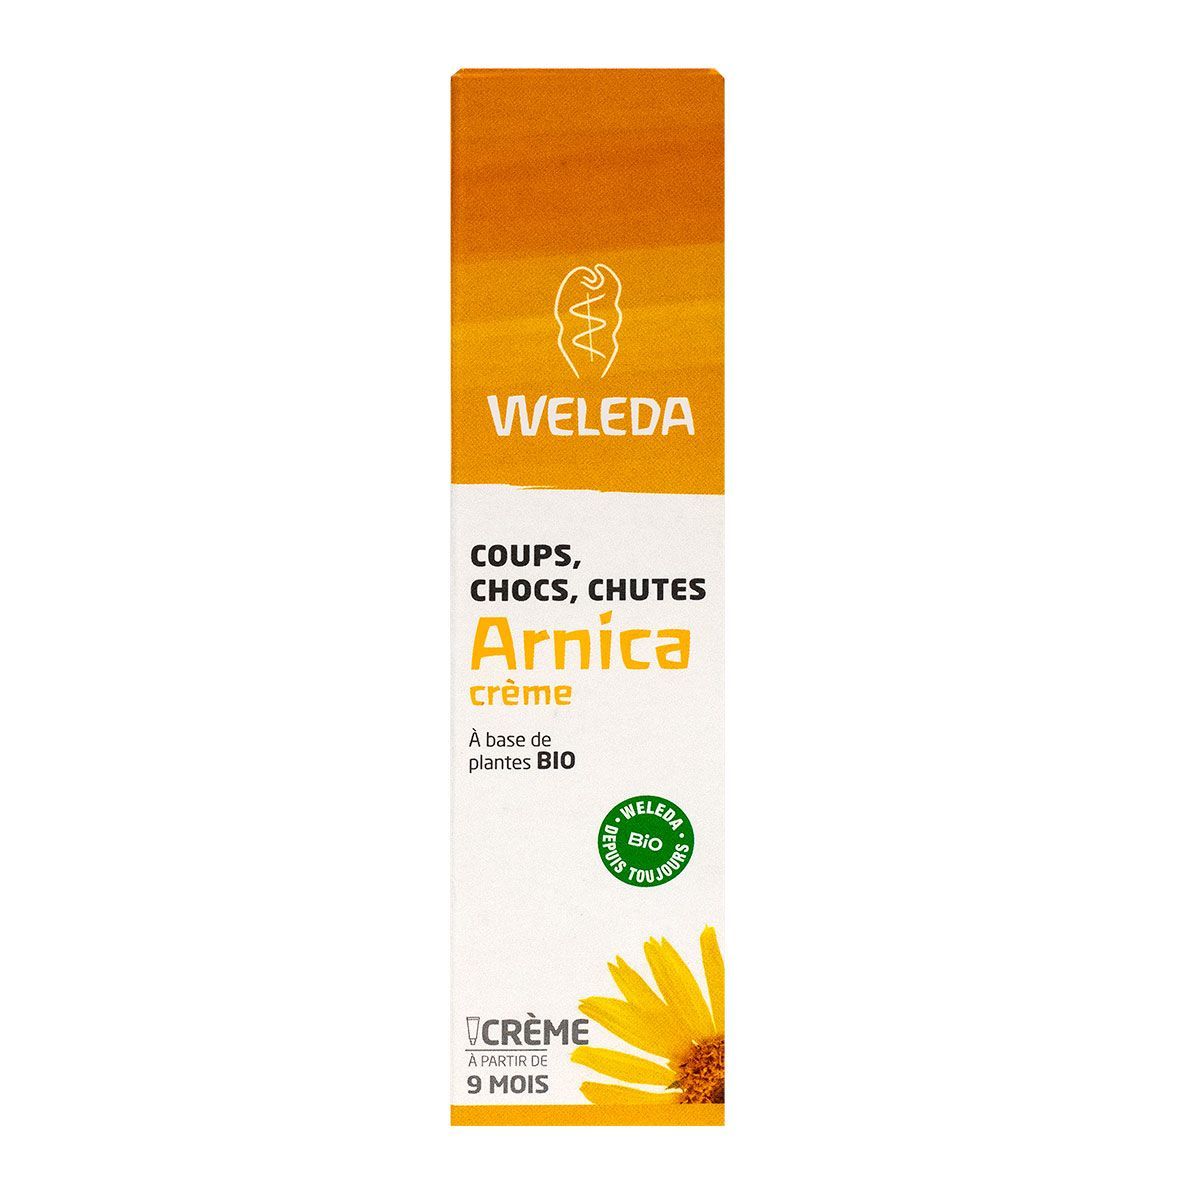 Arnica crème Weleda est formulée à base de plantes pour apaiser l